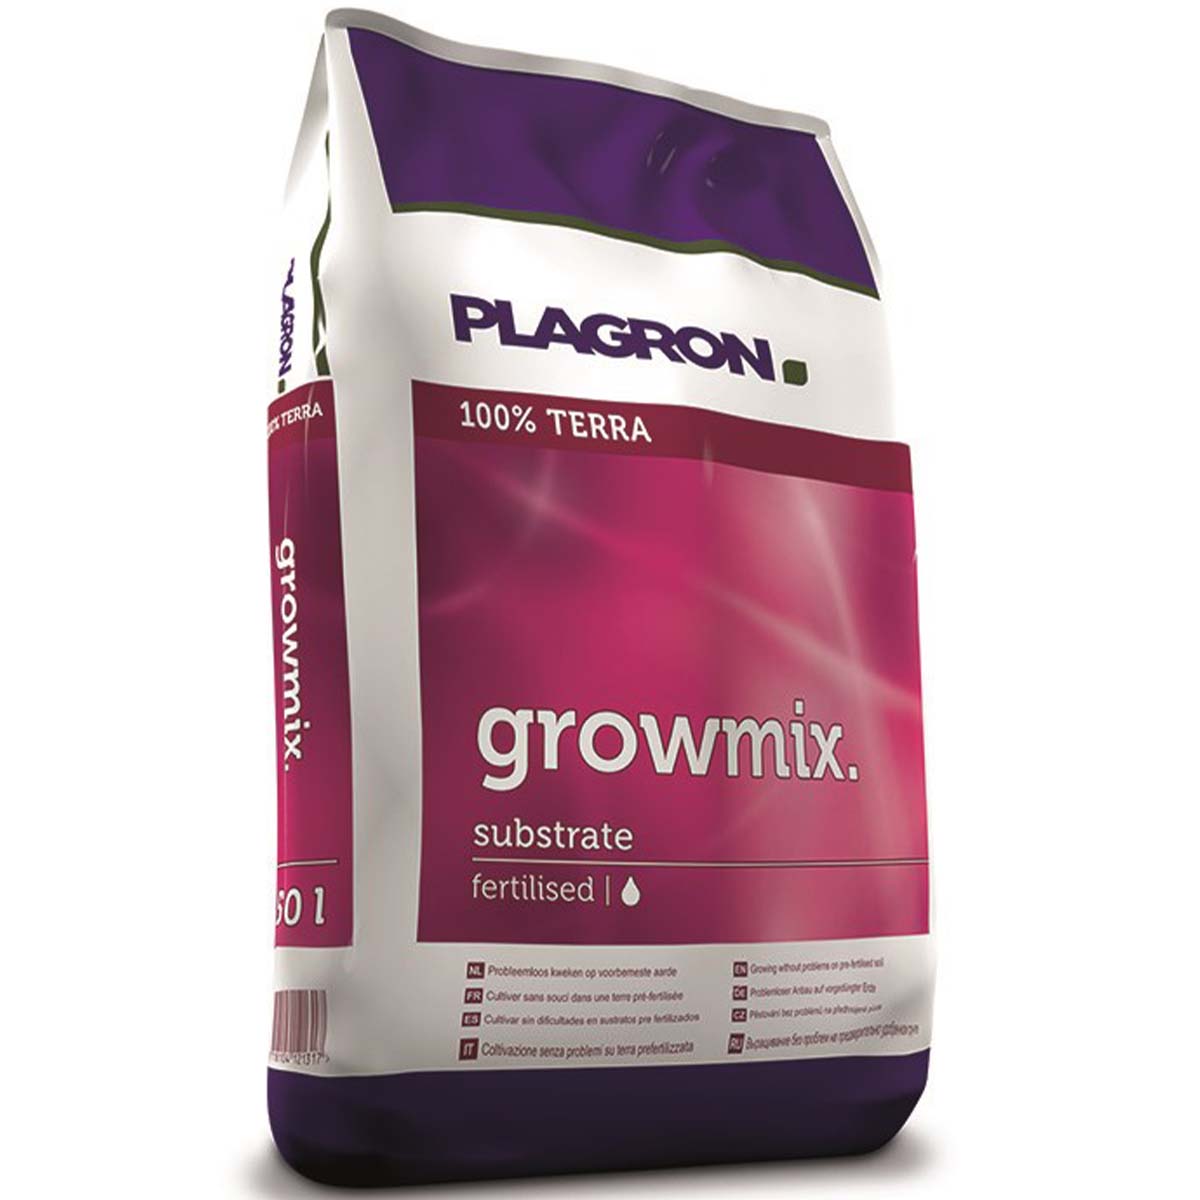 Plagron Growmix 50 litre